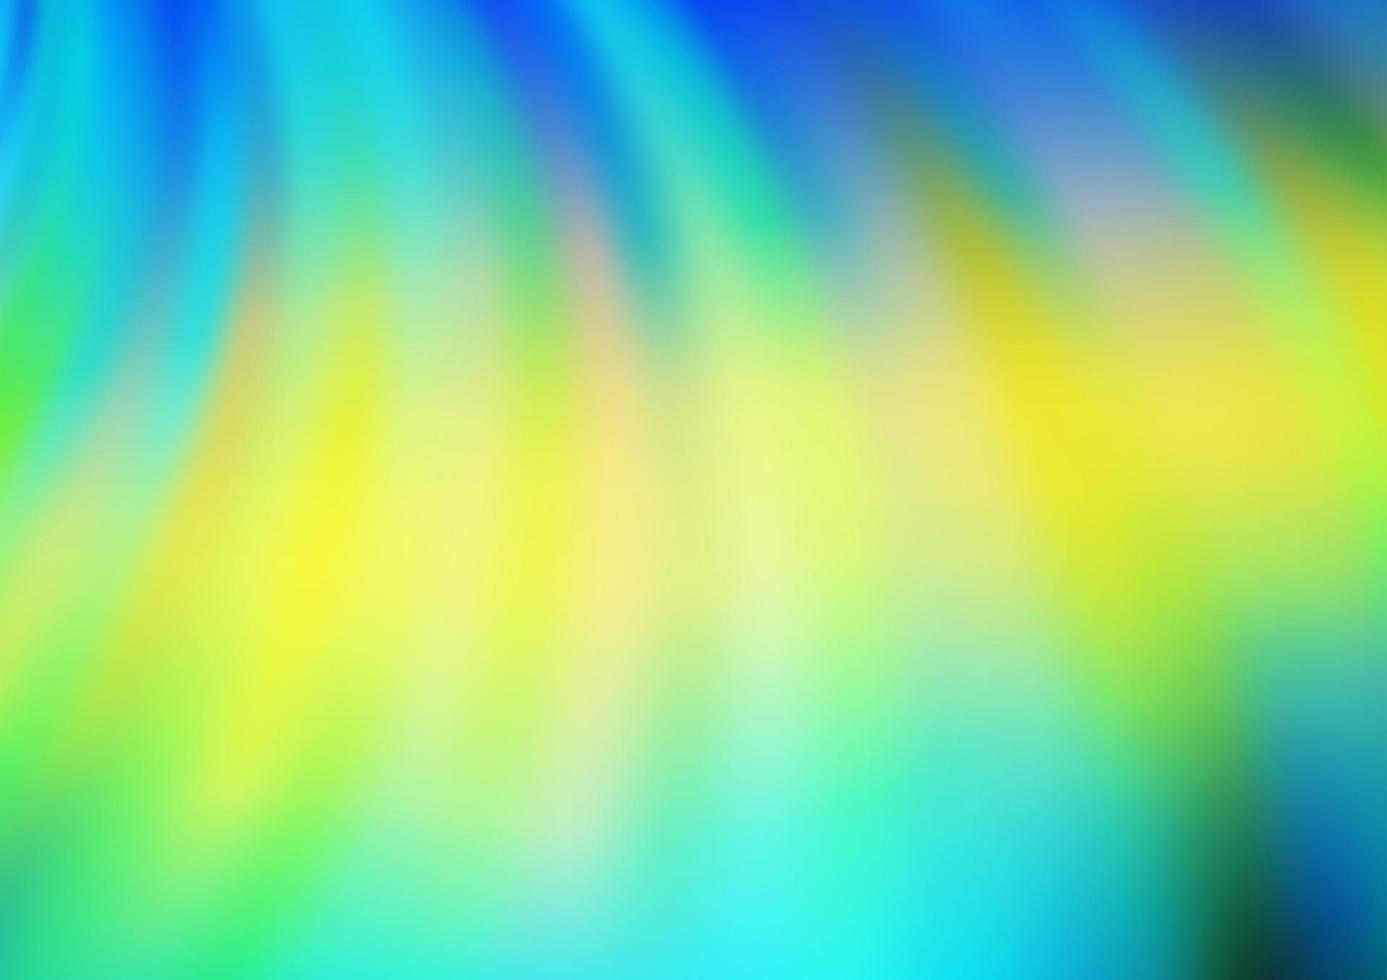 ljusblå, gul vektormall med linjer, ovaler. vektor